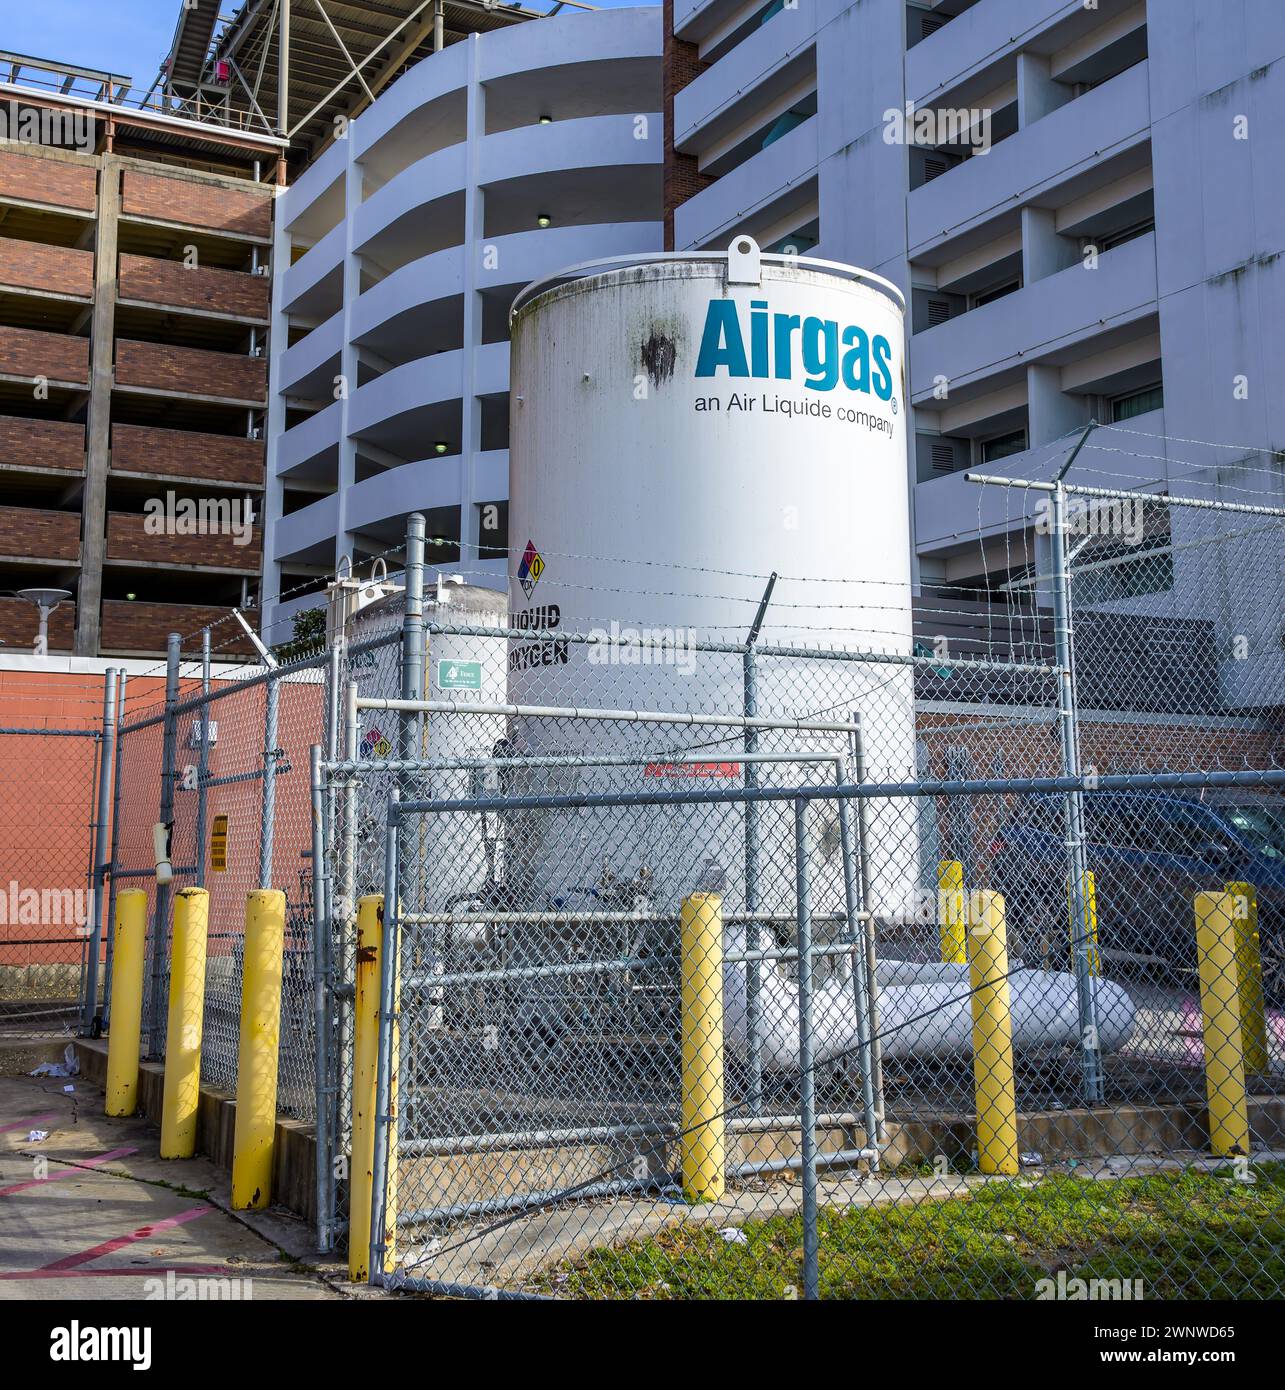 NOUVELLE-ORLÉANS, LOUISIANE, États-Unis - 21 DÉCEMBRE 2023 : grand réservoir d'oxygène liquide extérieur Airgas derrière l'hôpital baptiste Ochsner dans le centre-ville de la Nouvelle-Orléans Banque D'Images